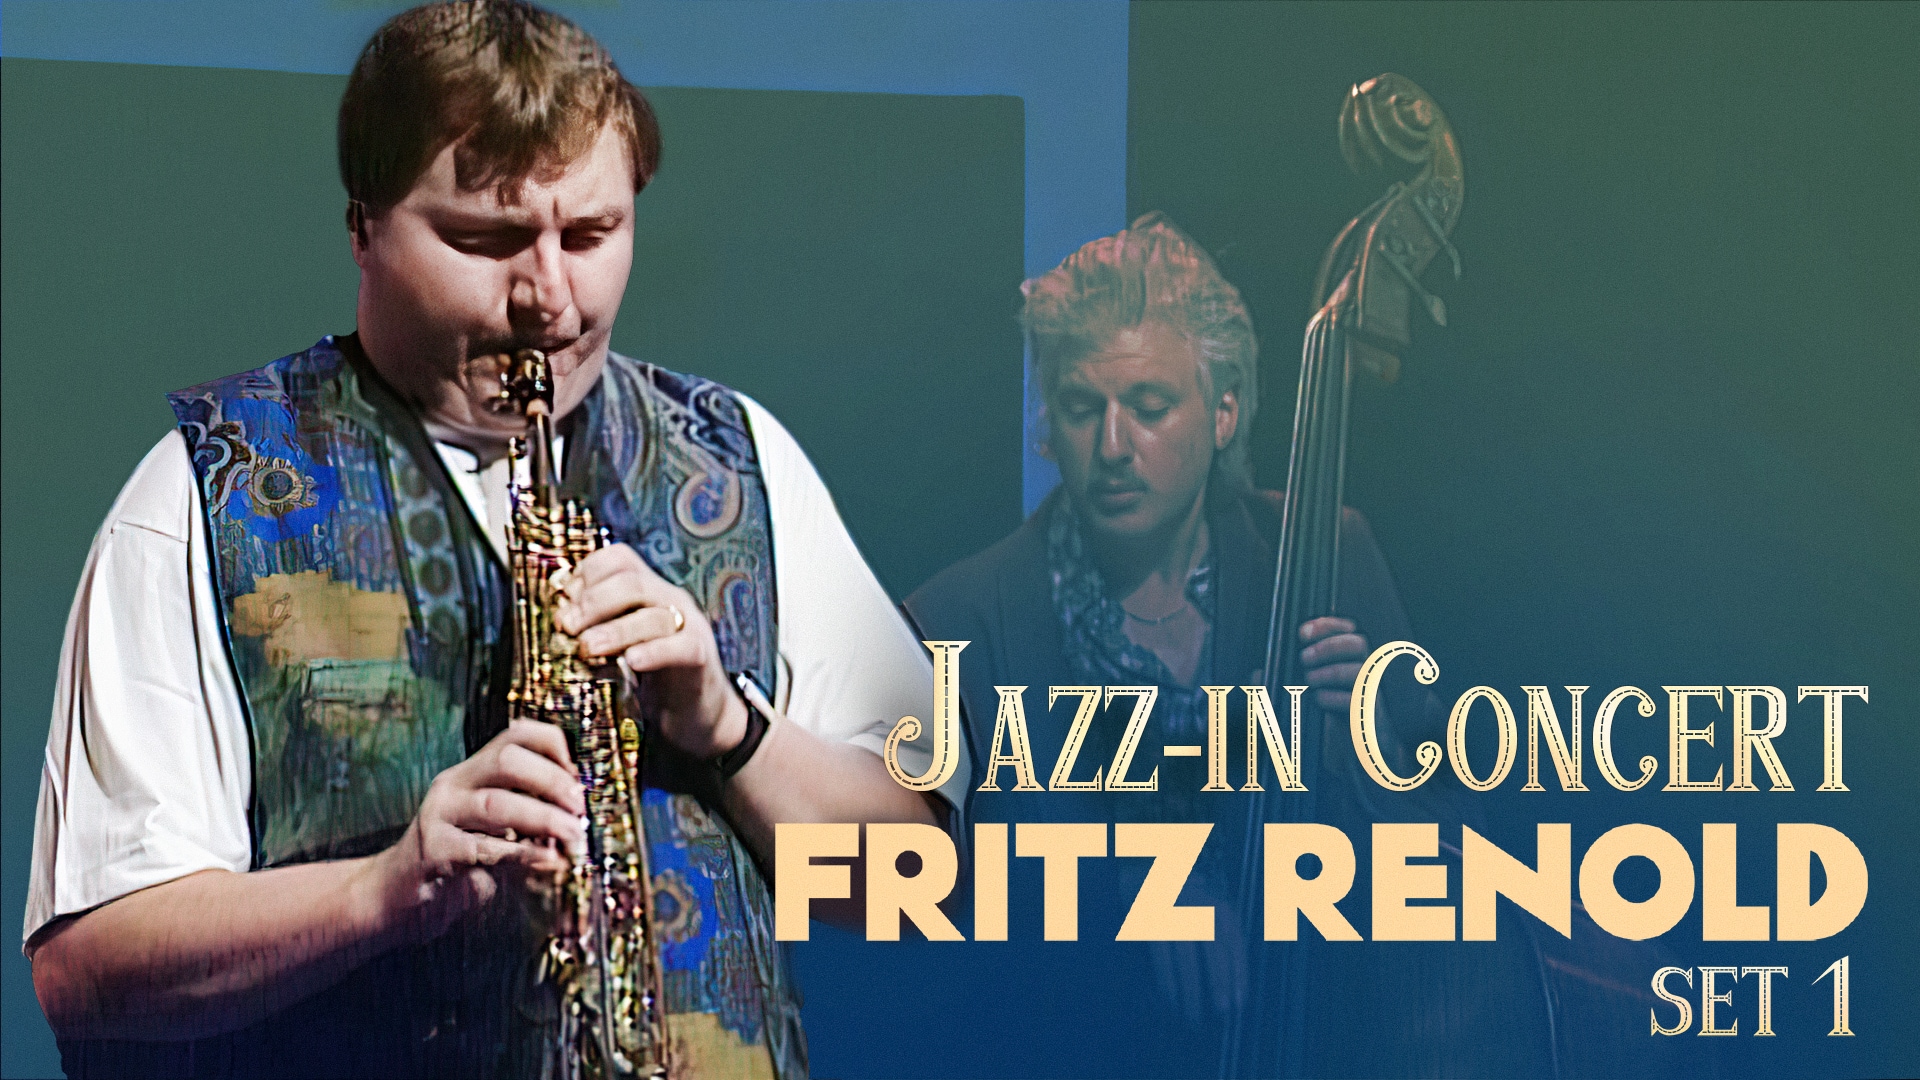 Jazz-in Concert - Fritz Renold (Set 1)